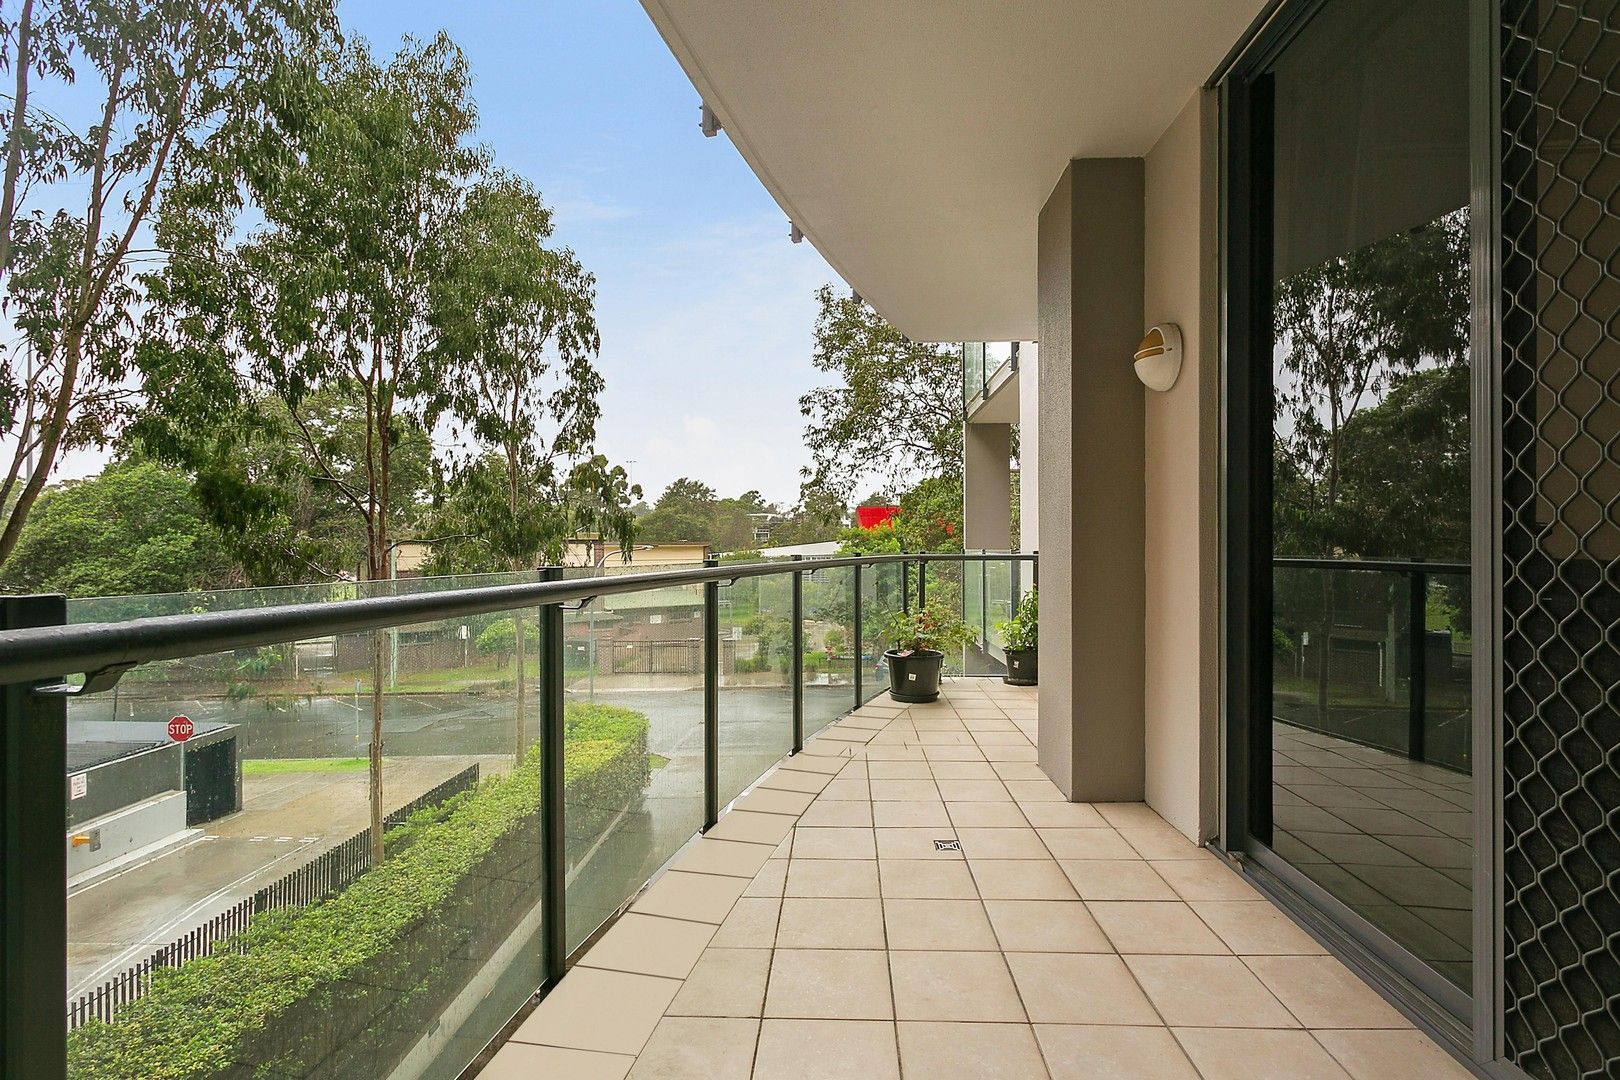 3 bedrooms Apartment / Unit / Flat in 102/11-19 Waitara Avenue WAITARA NSW, 2077